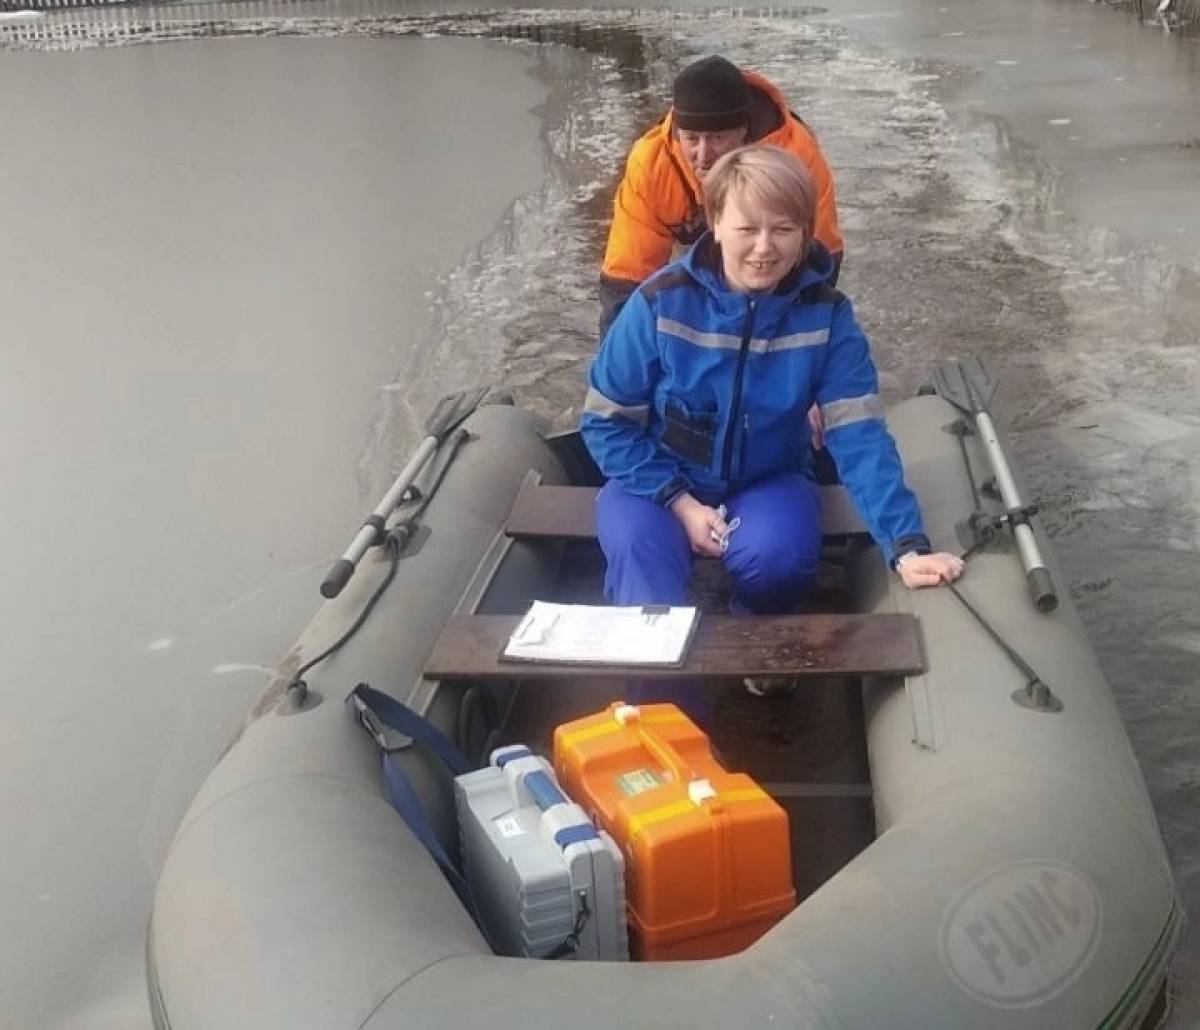 Лодки новгородская область. Наводнение. Затопленная лодка. Подтопление. Фото скорой помощи.